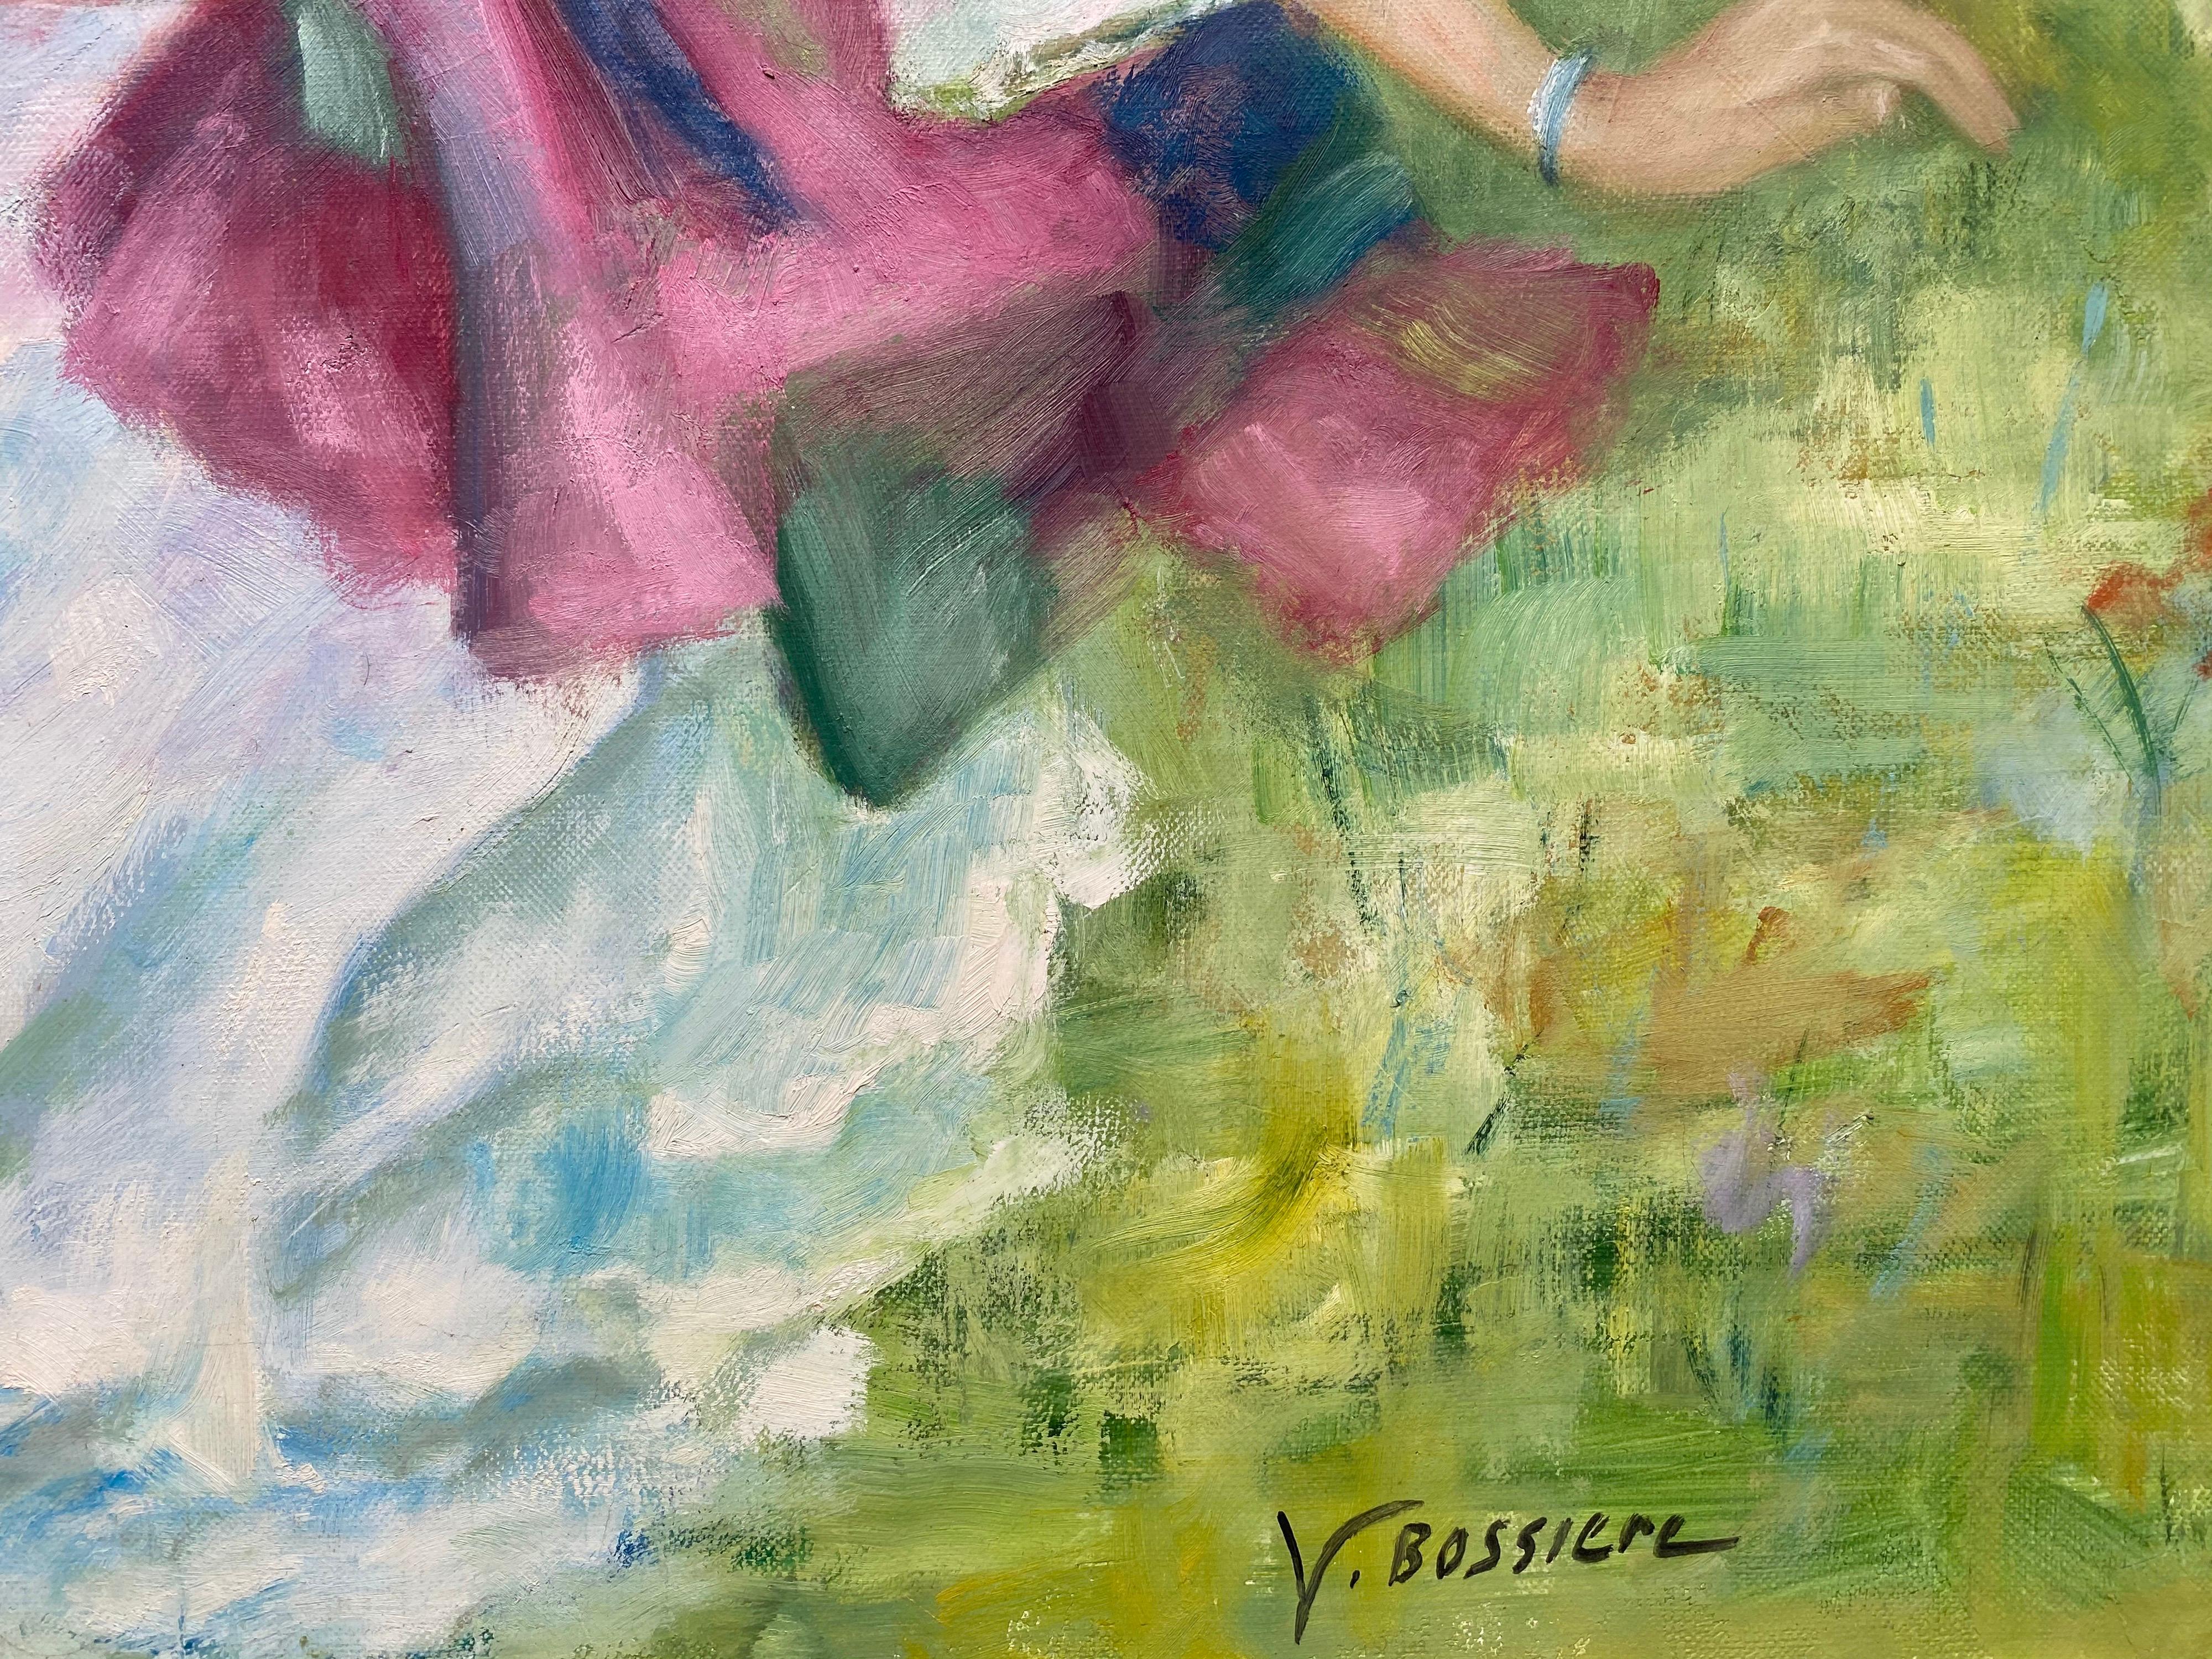 Artiste : Yvette Bossiere (française, née en 1926), signée dans le coin inférieur et au verso

Titre : Dans le Jardin

Support : peinture à l'huile sur toile, non encadrée

Taille : peinture : 36.5 x 29 pouces

Provenance : la succession de